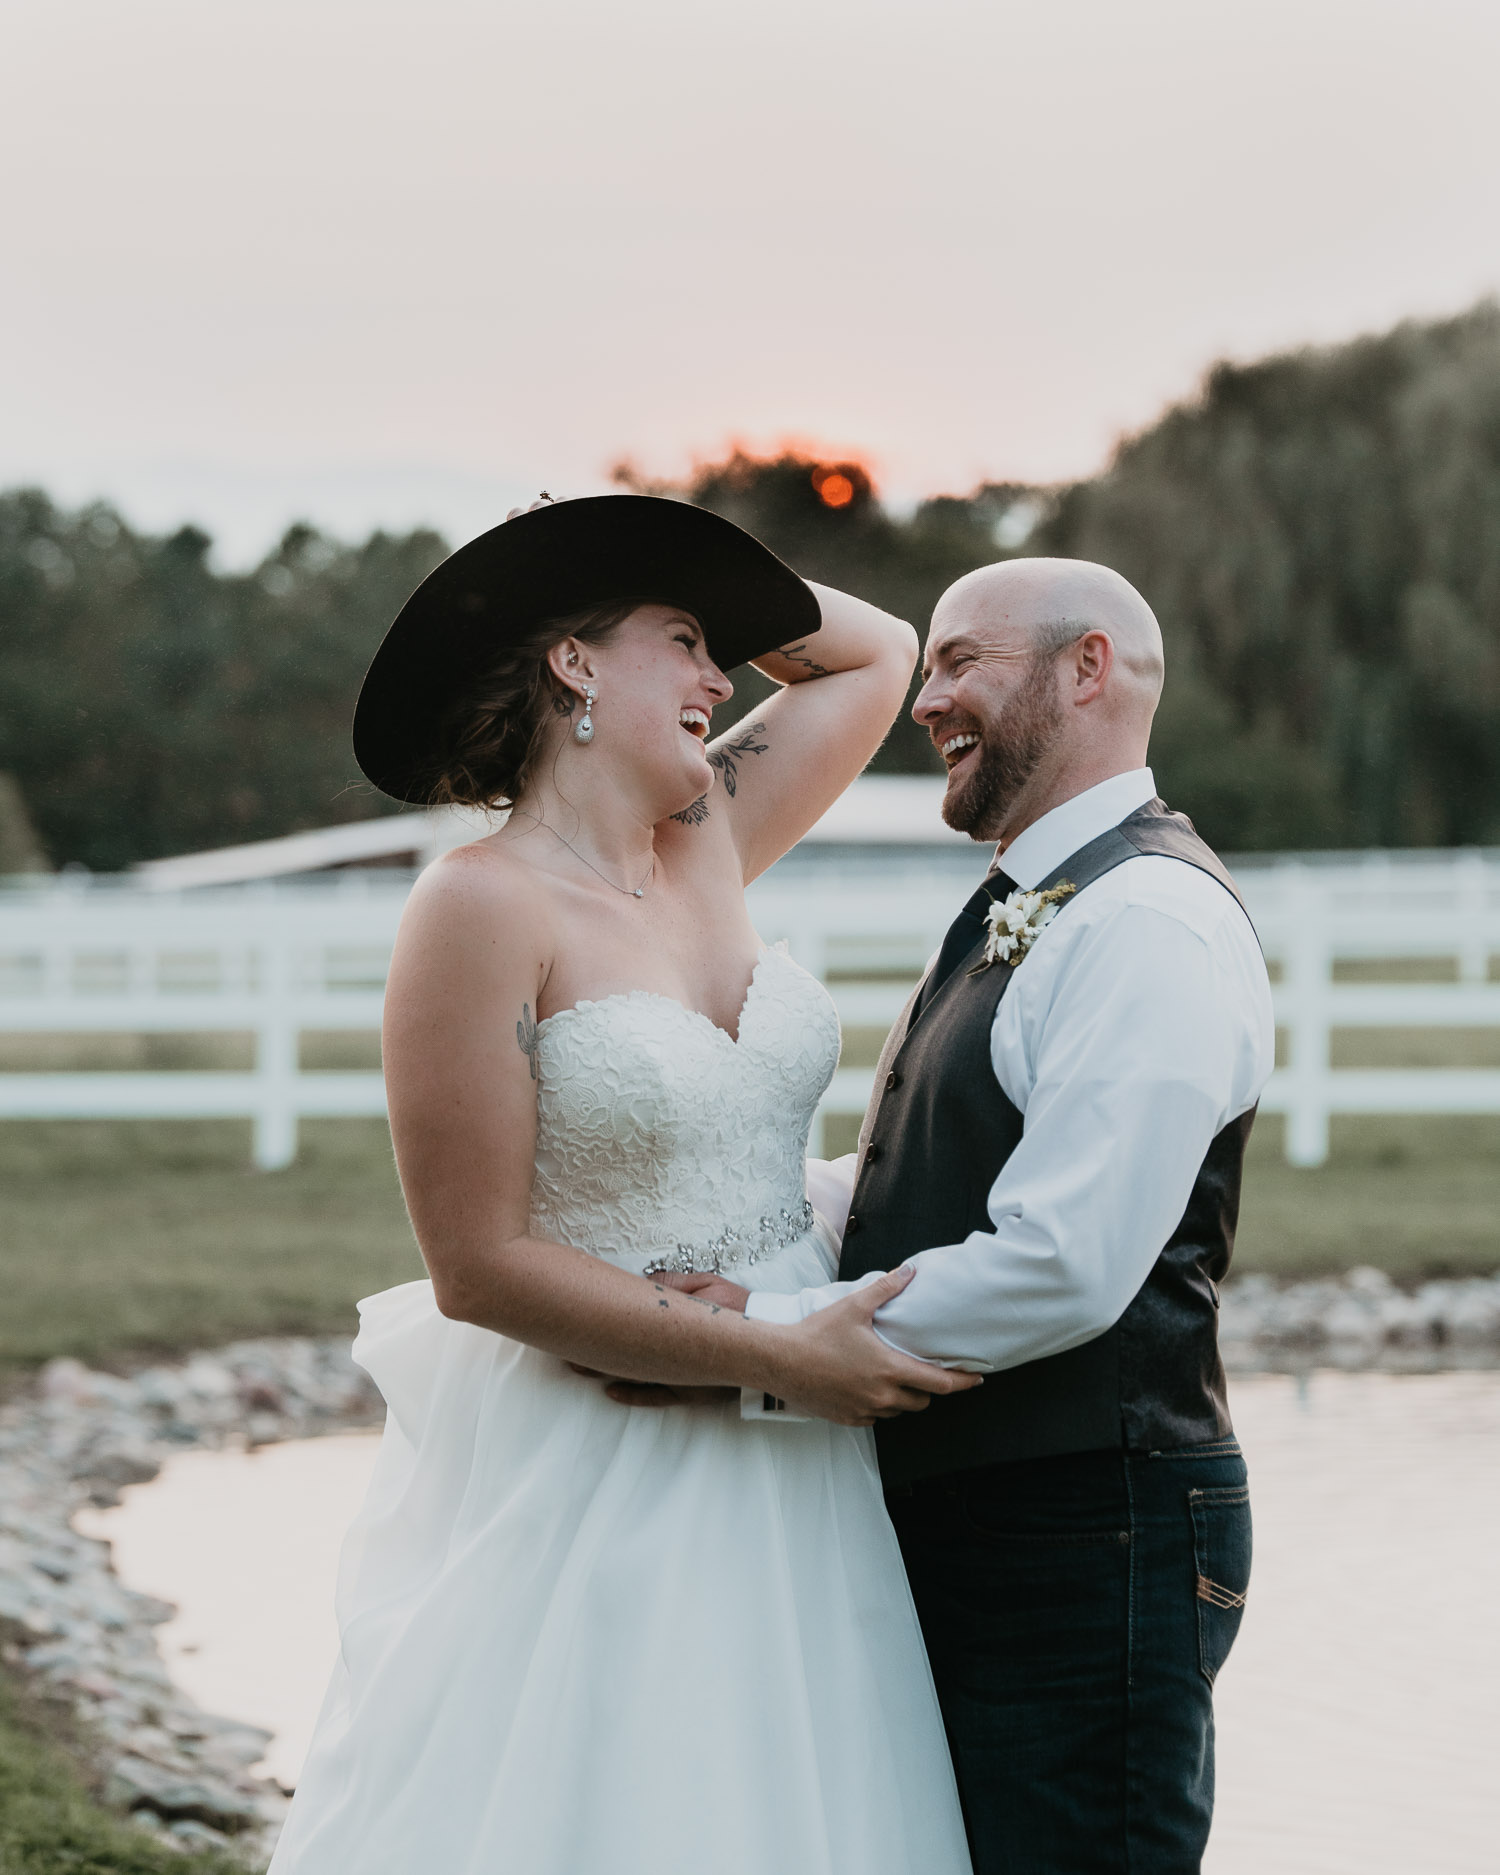 Best Of 2018 Colorado Wedding Photography, Colorado Elopement Photographer, Colorado Couples Photographer